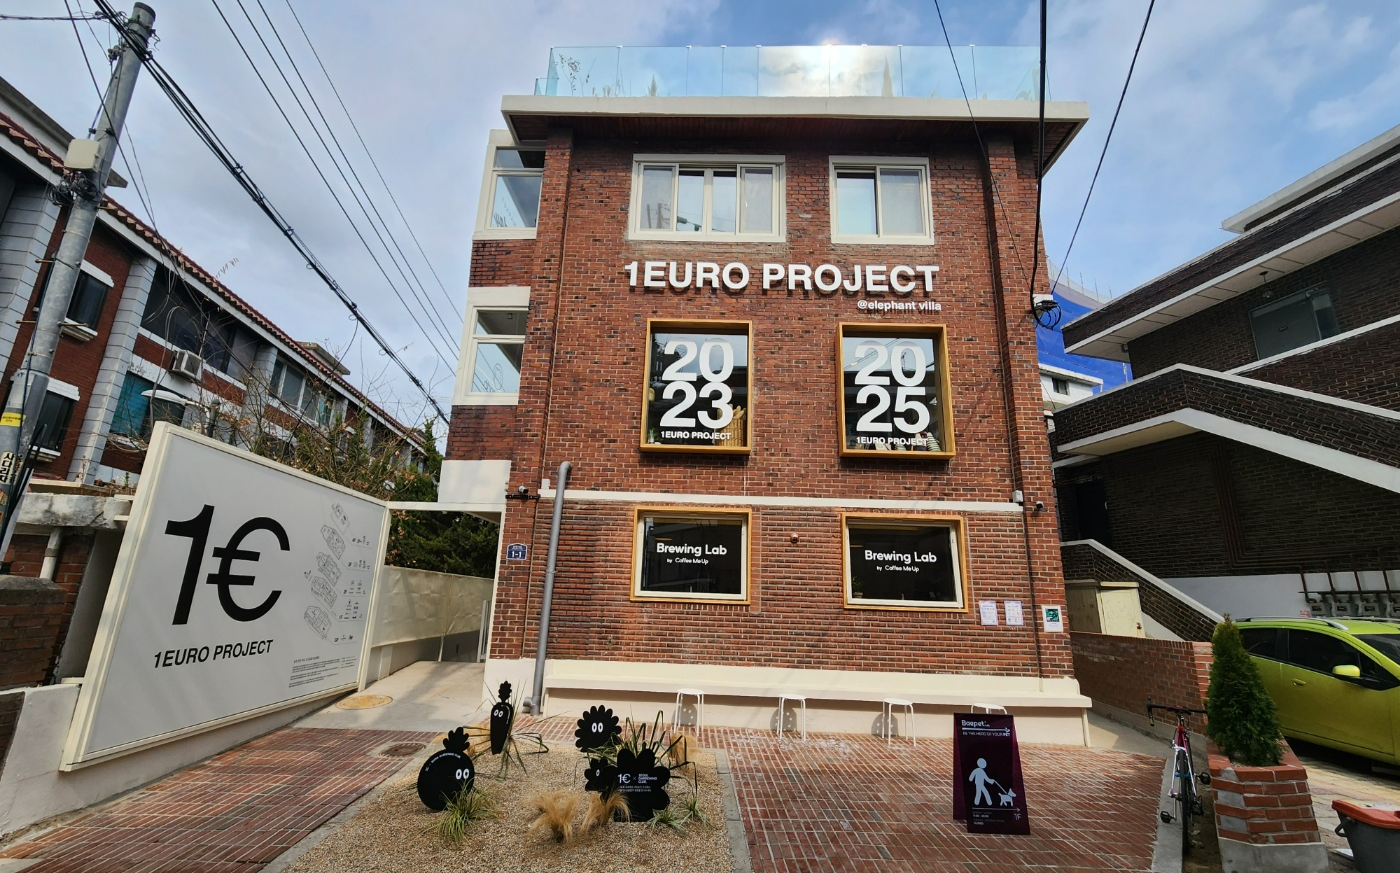 15일 서울 성동구 송정동에 위치한 ‘1유로 프로젝트’가 영업을 하고 있는 가운데 건물 외벽에 프로젝트명이 적혀있다. 곽소영 기자